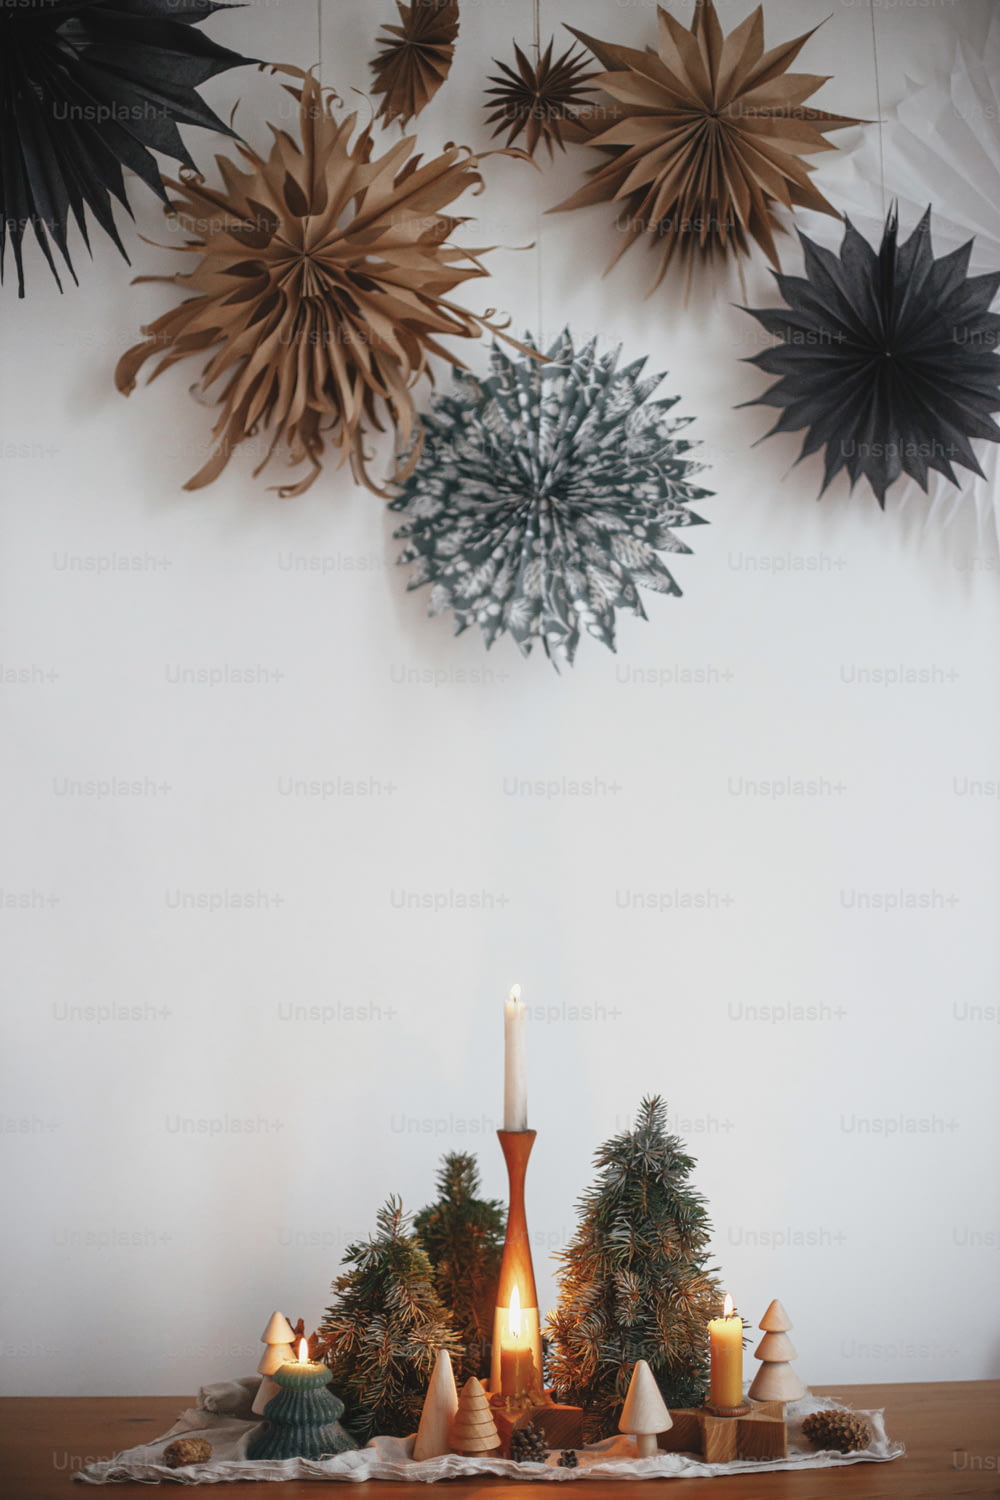 Elegantes velas navideñas y decoraciones de árboles en mesa de madera sobre fondo de pared blanca con grandes estrellas de papel. Decoración navideña hecha a mano. Horario de invierno atmosférico. ¡Feliz Navidad!